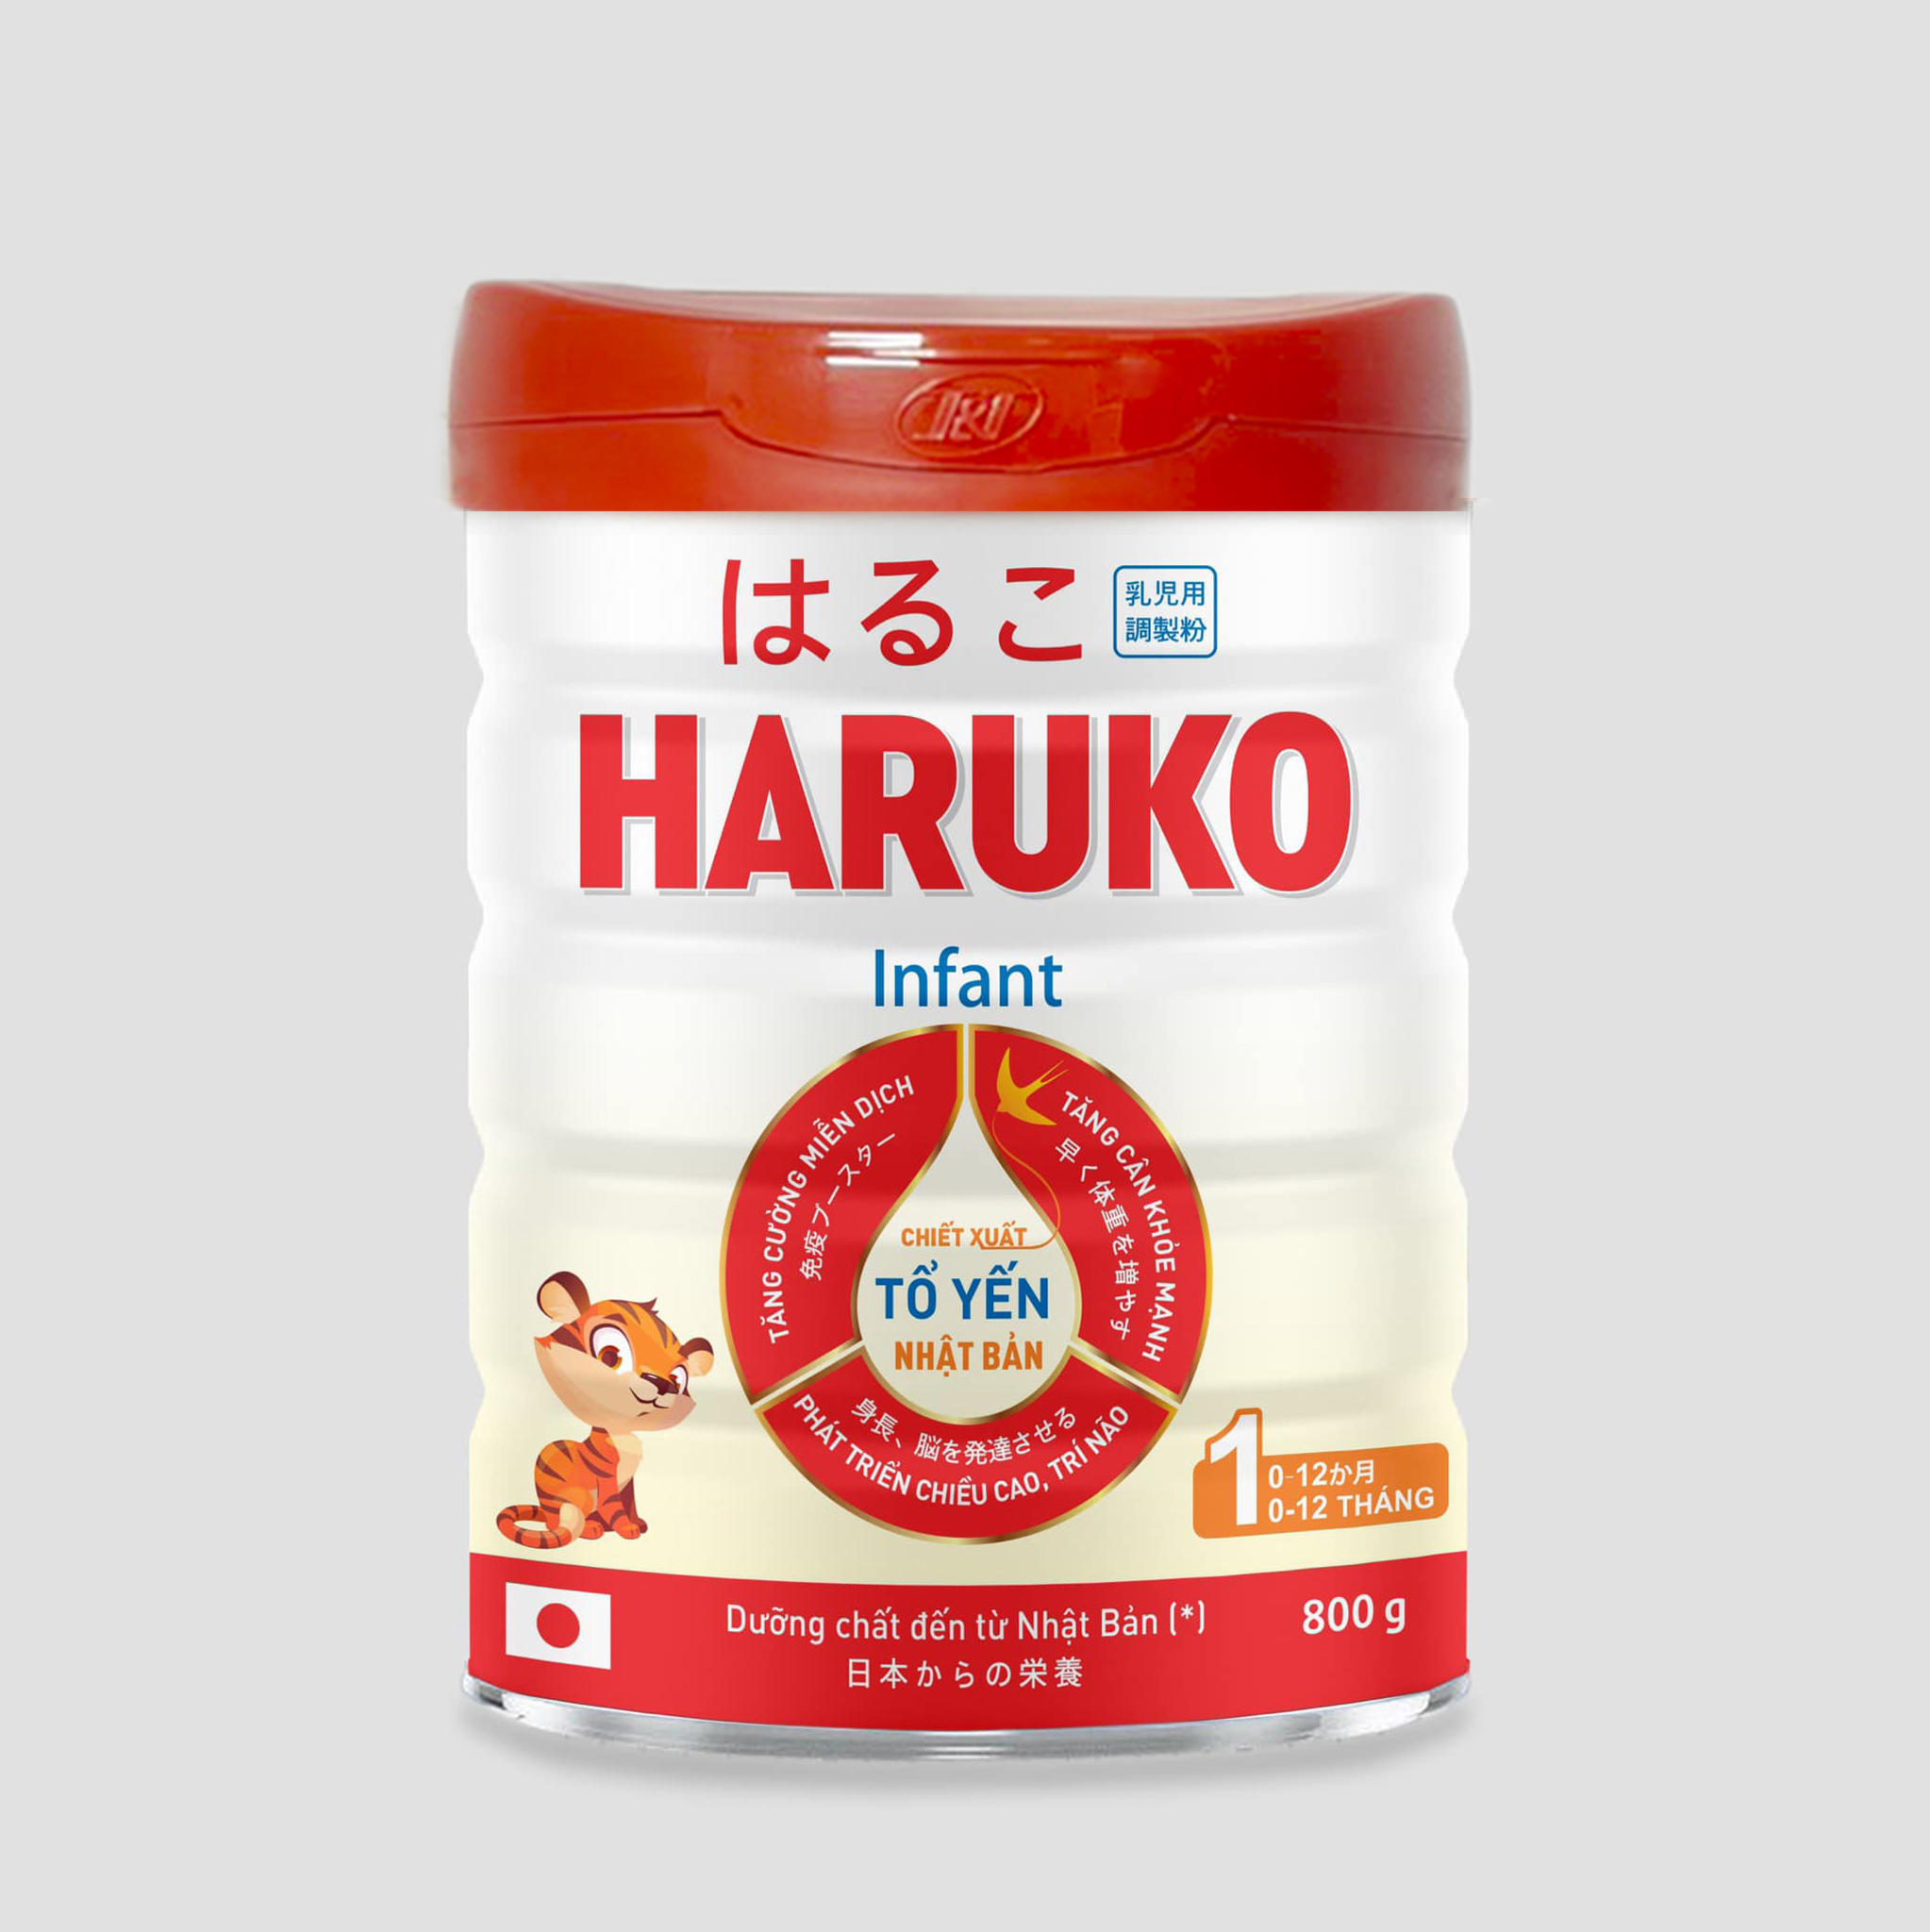 Haruko Infant